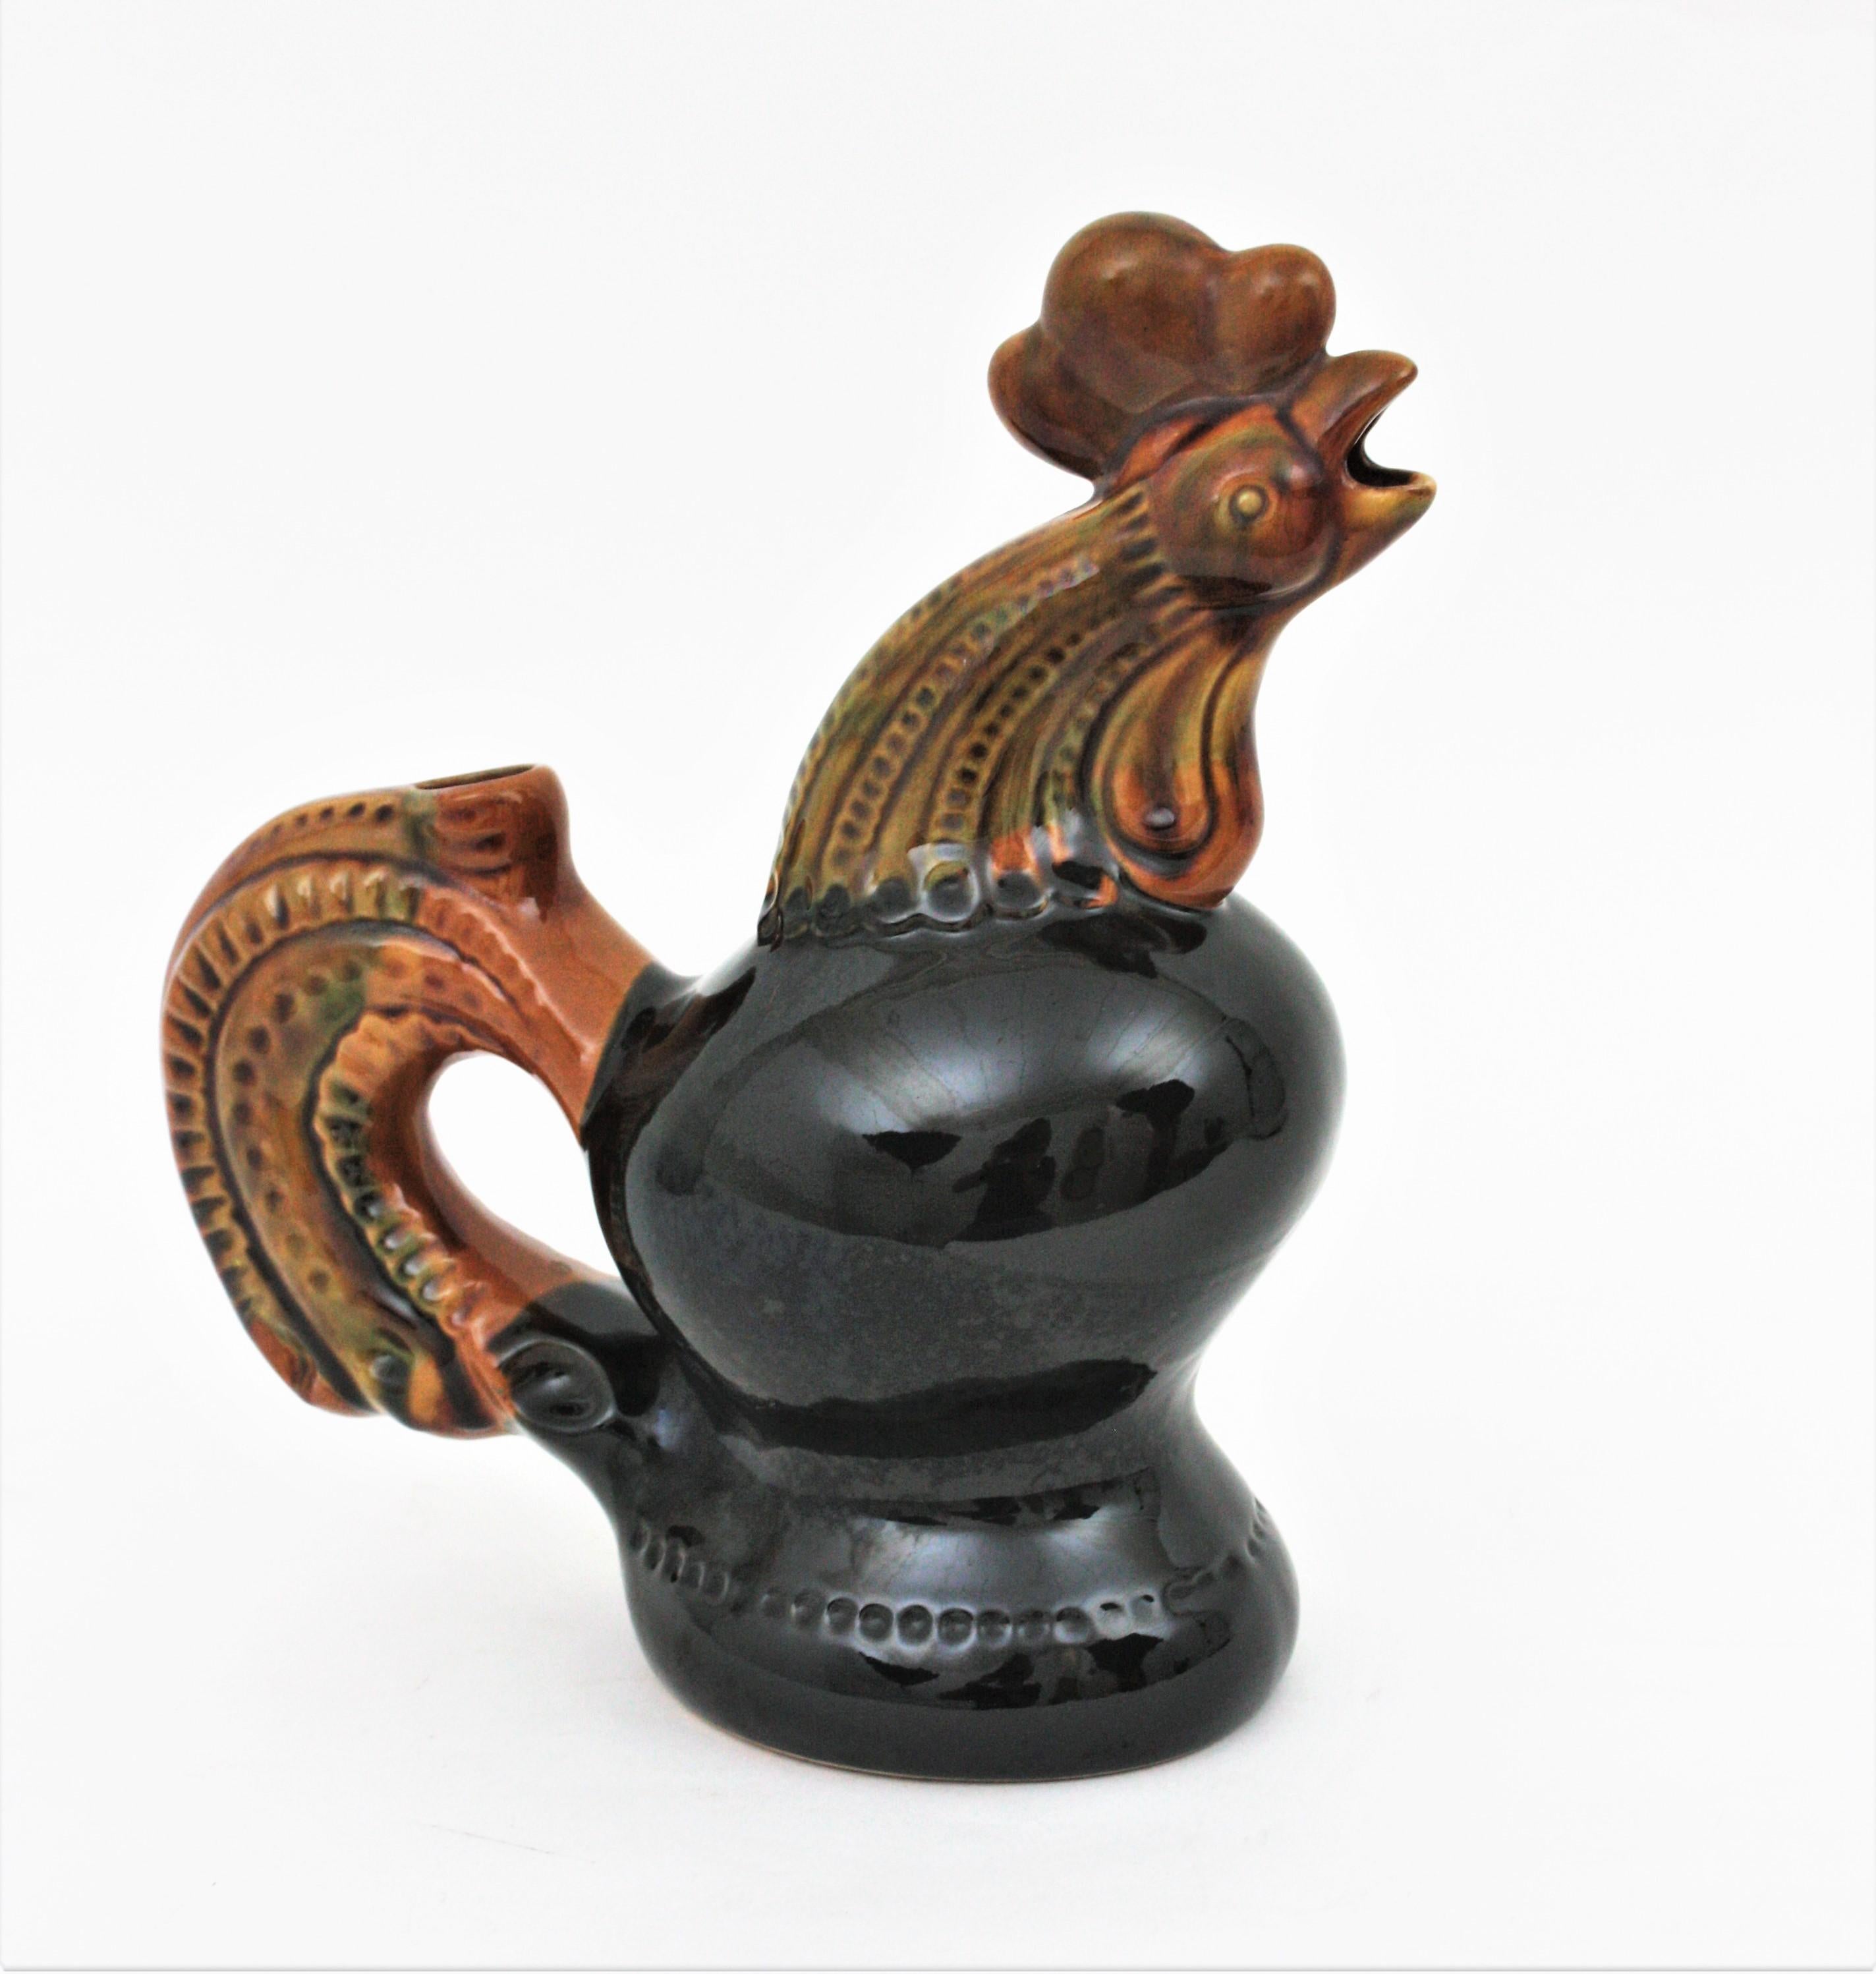 Auffälliger schwarzer und bernsteinfarbener Majolika-Keramik-Hahnkrug, Ukraine, 1950er-1960er Jahre.
Ein cooler Akzent für jede Küche oder als Servierkrug zu verwenden. Hübsch als Teil einer Keramiksammlung in einer Vitrine ausgestellt.
Neuwertiger